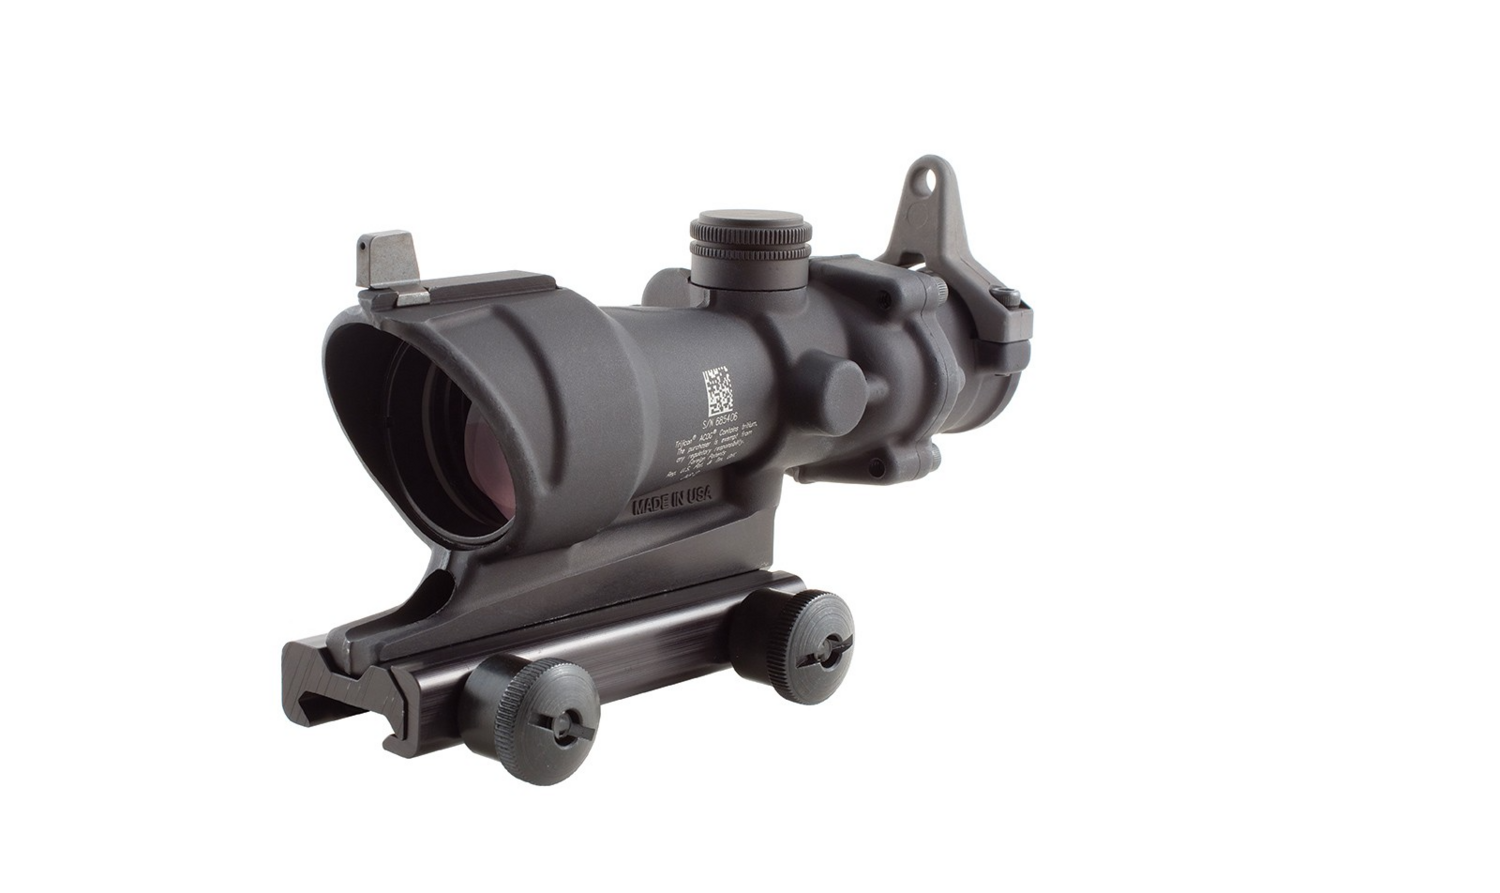 ACOG 4x32 Tritium Riflescope - .308/7.62 BDC
Trijicon